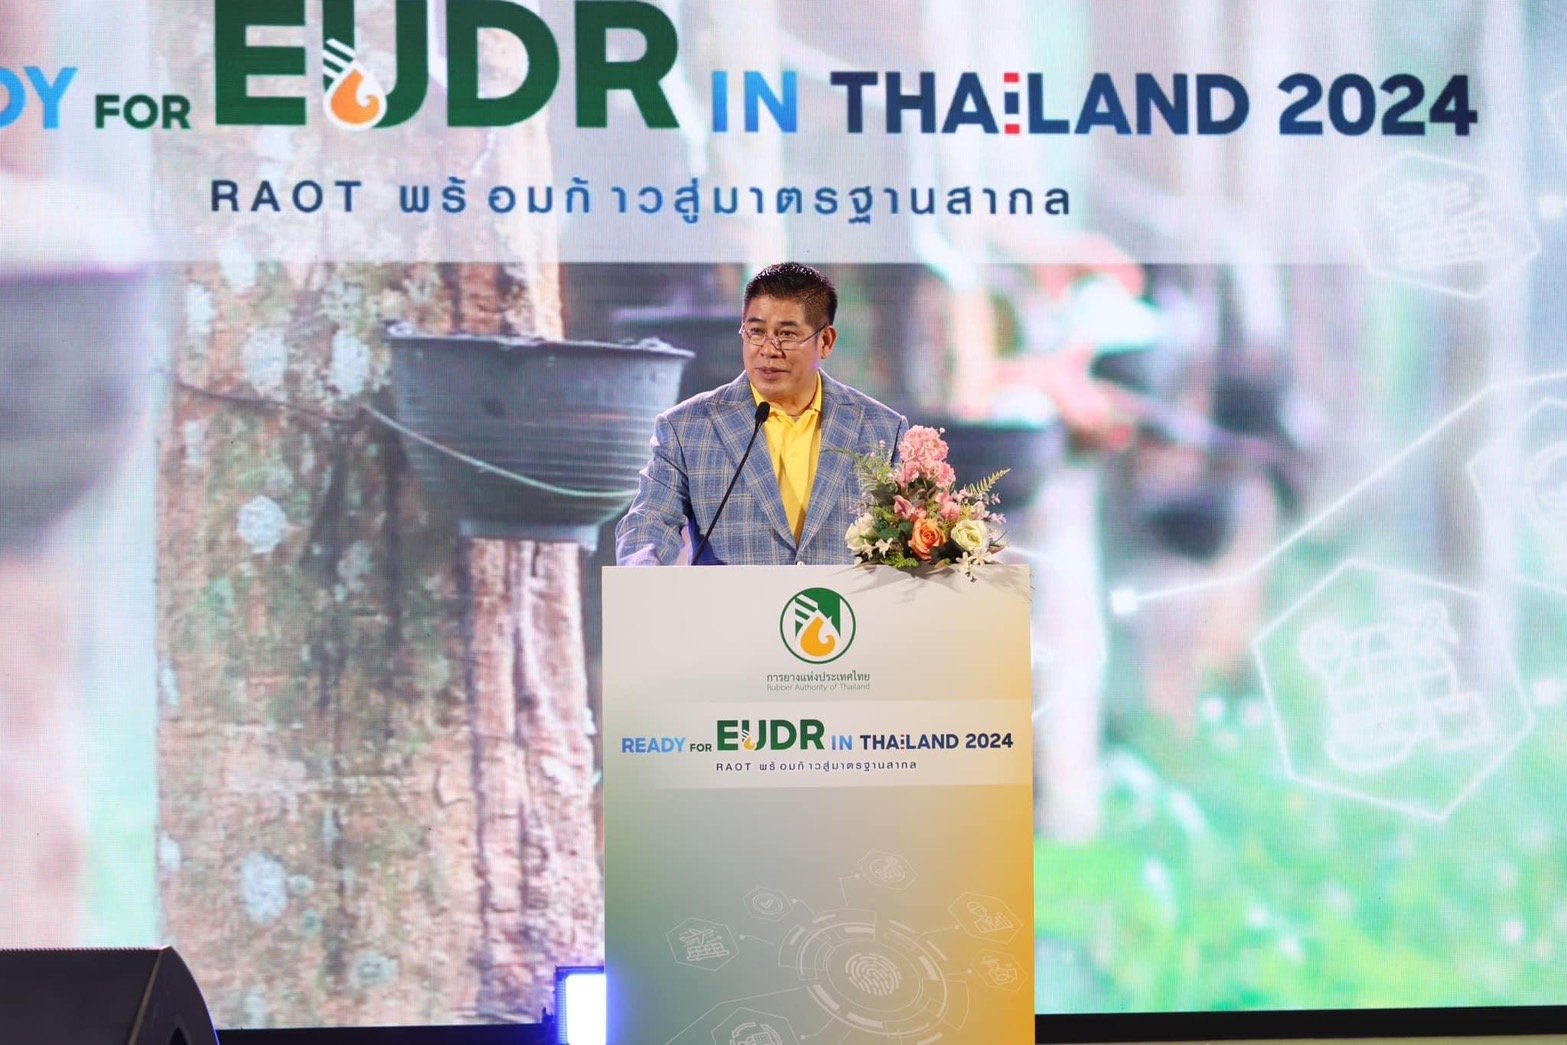 ส.ป.ก. ร่วมงาน Thailand ready for EUDR และ พิธีมอบโฉนดเพื่อการเกษตร